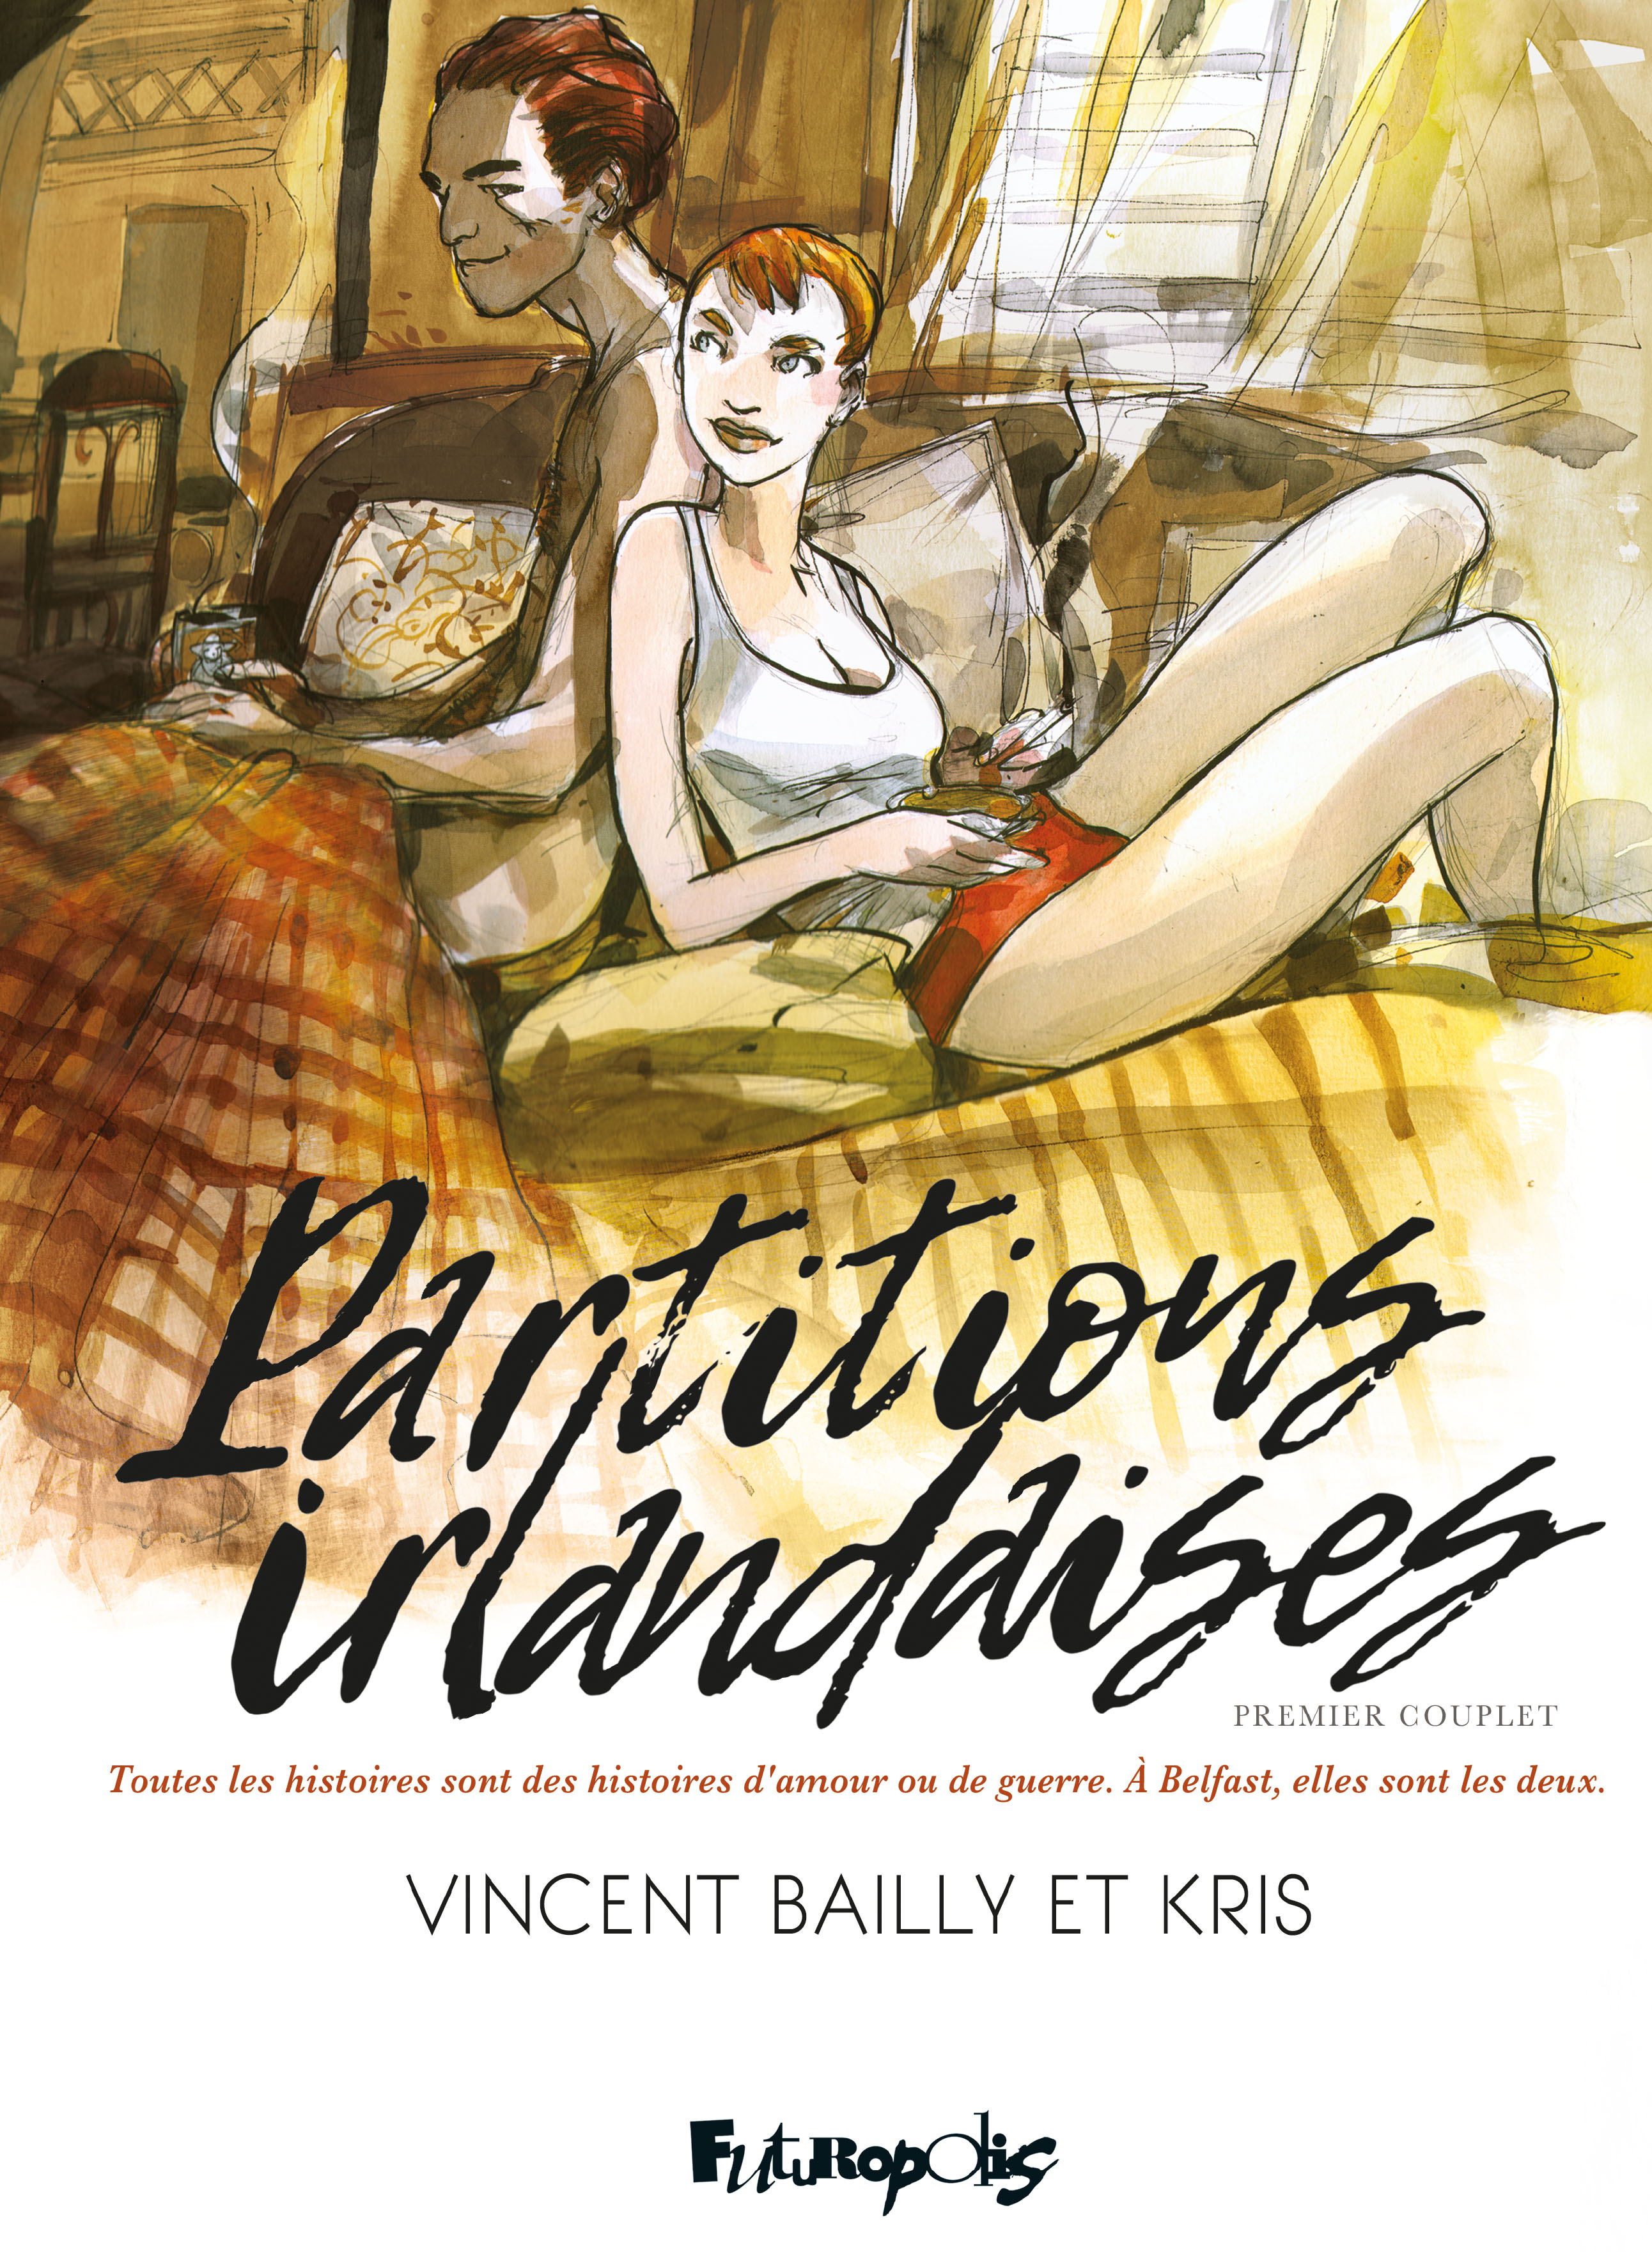  Un sac de billes: Première partie (1) (French Edition):  9782754802673: Bailly, Vincent, Kris, Bailly, Vincent: Books